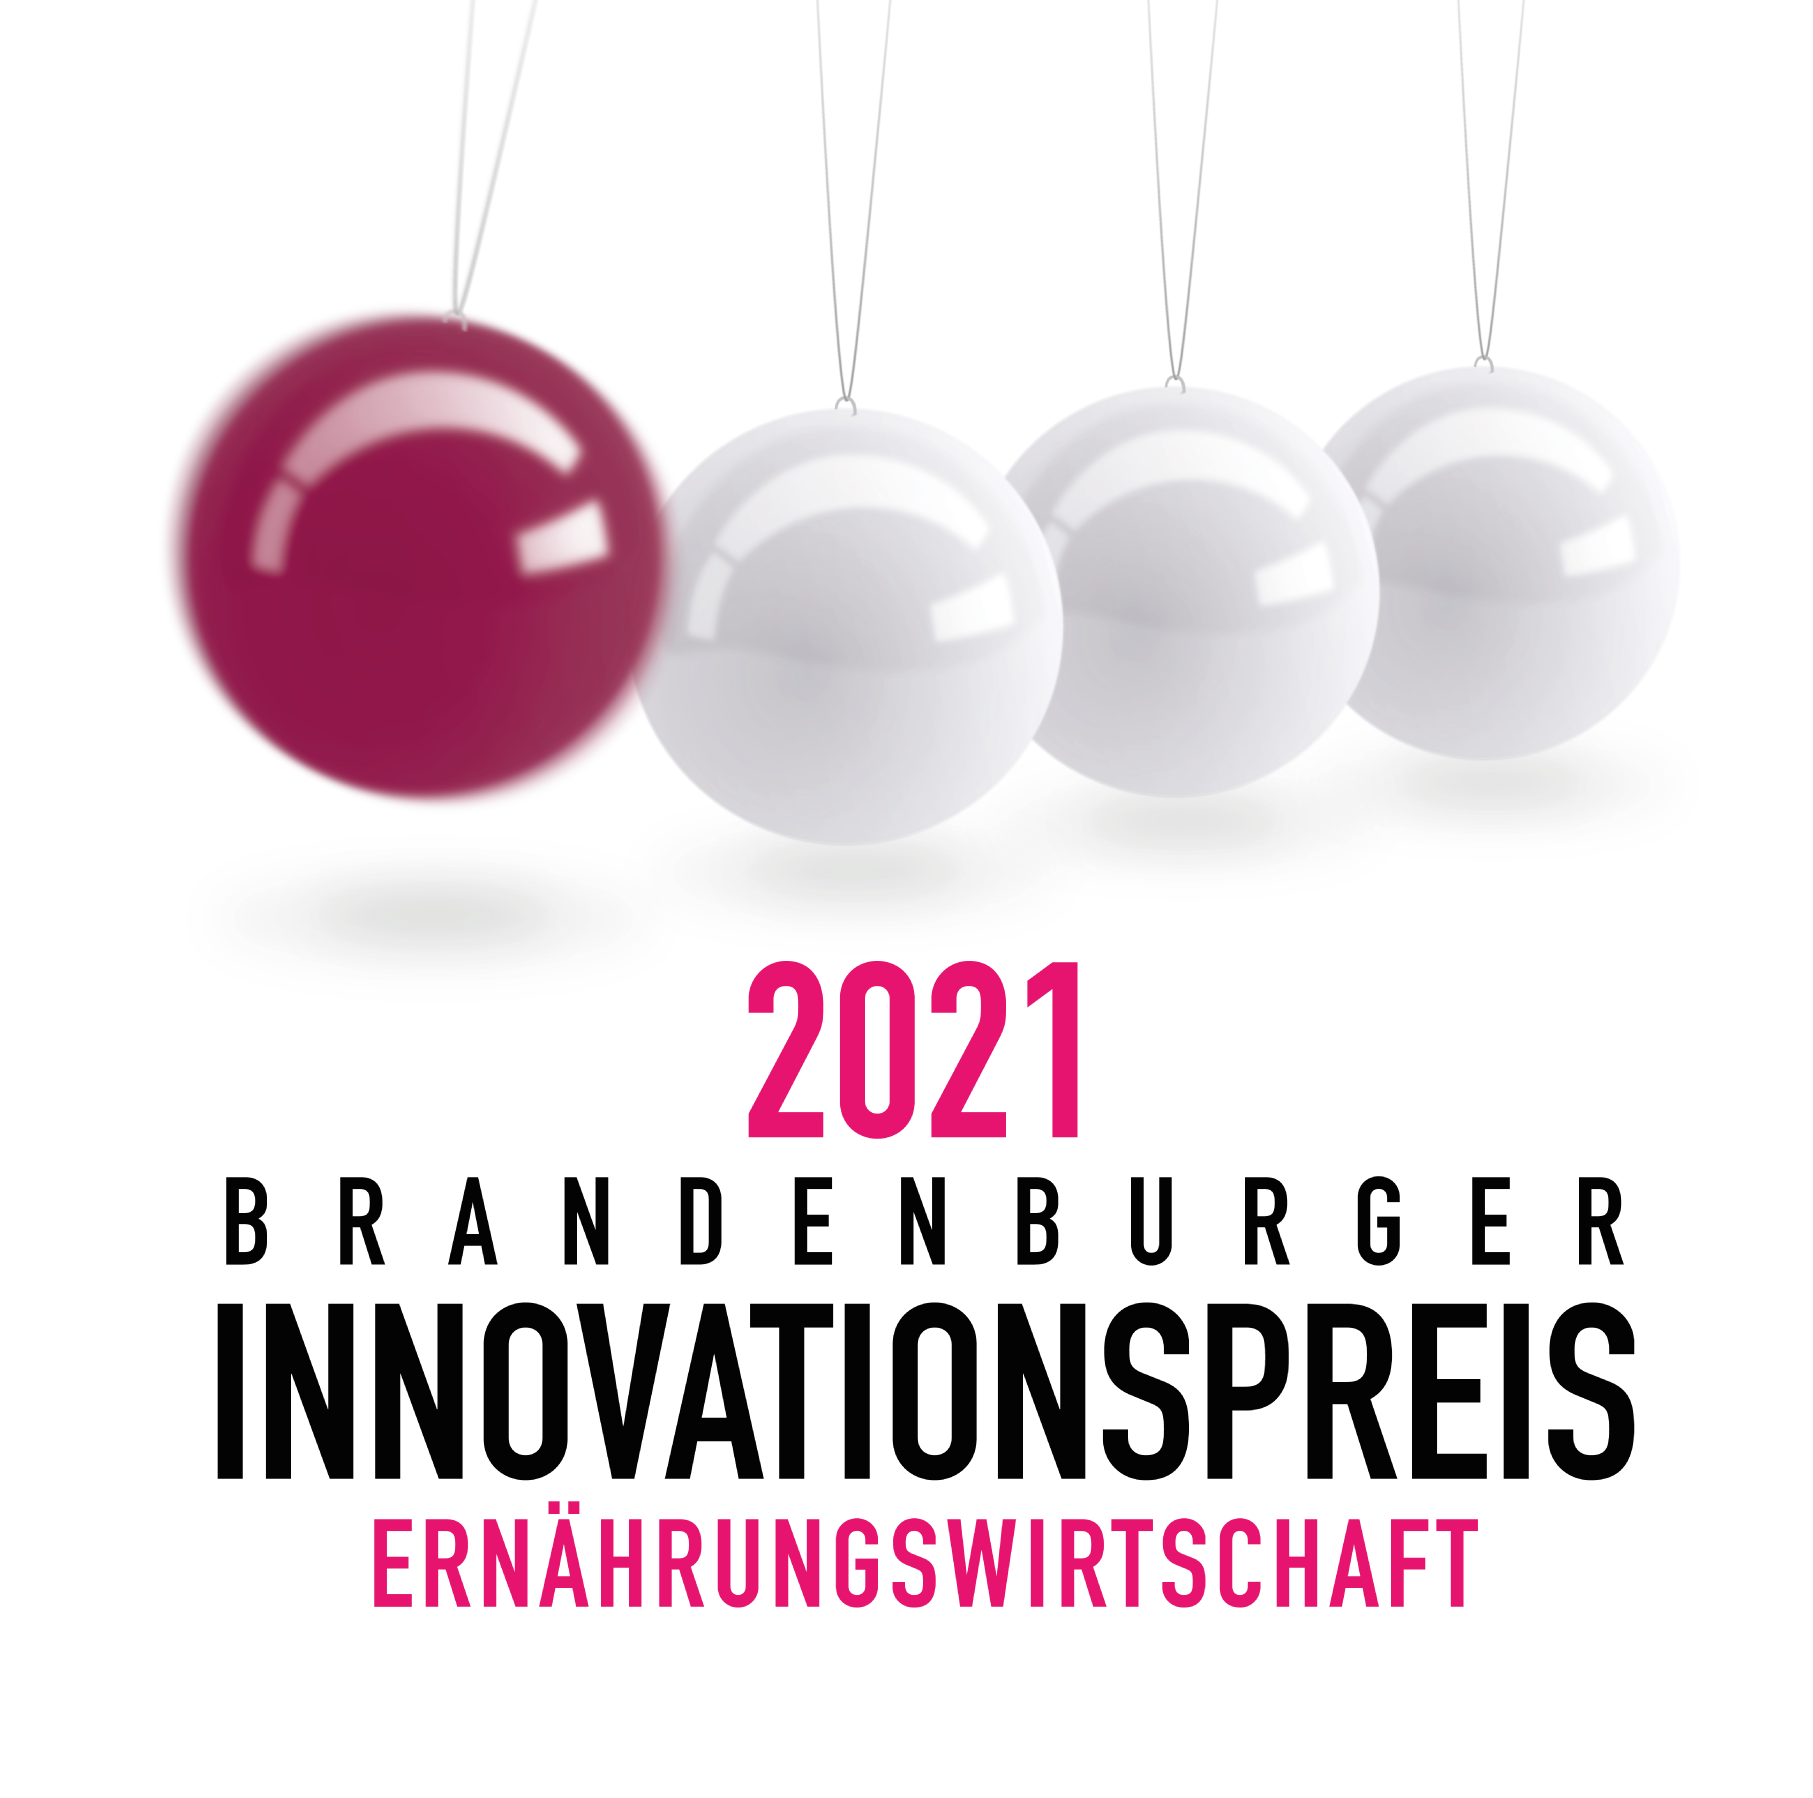 Logo Brandenburger Innovationspreis